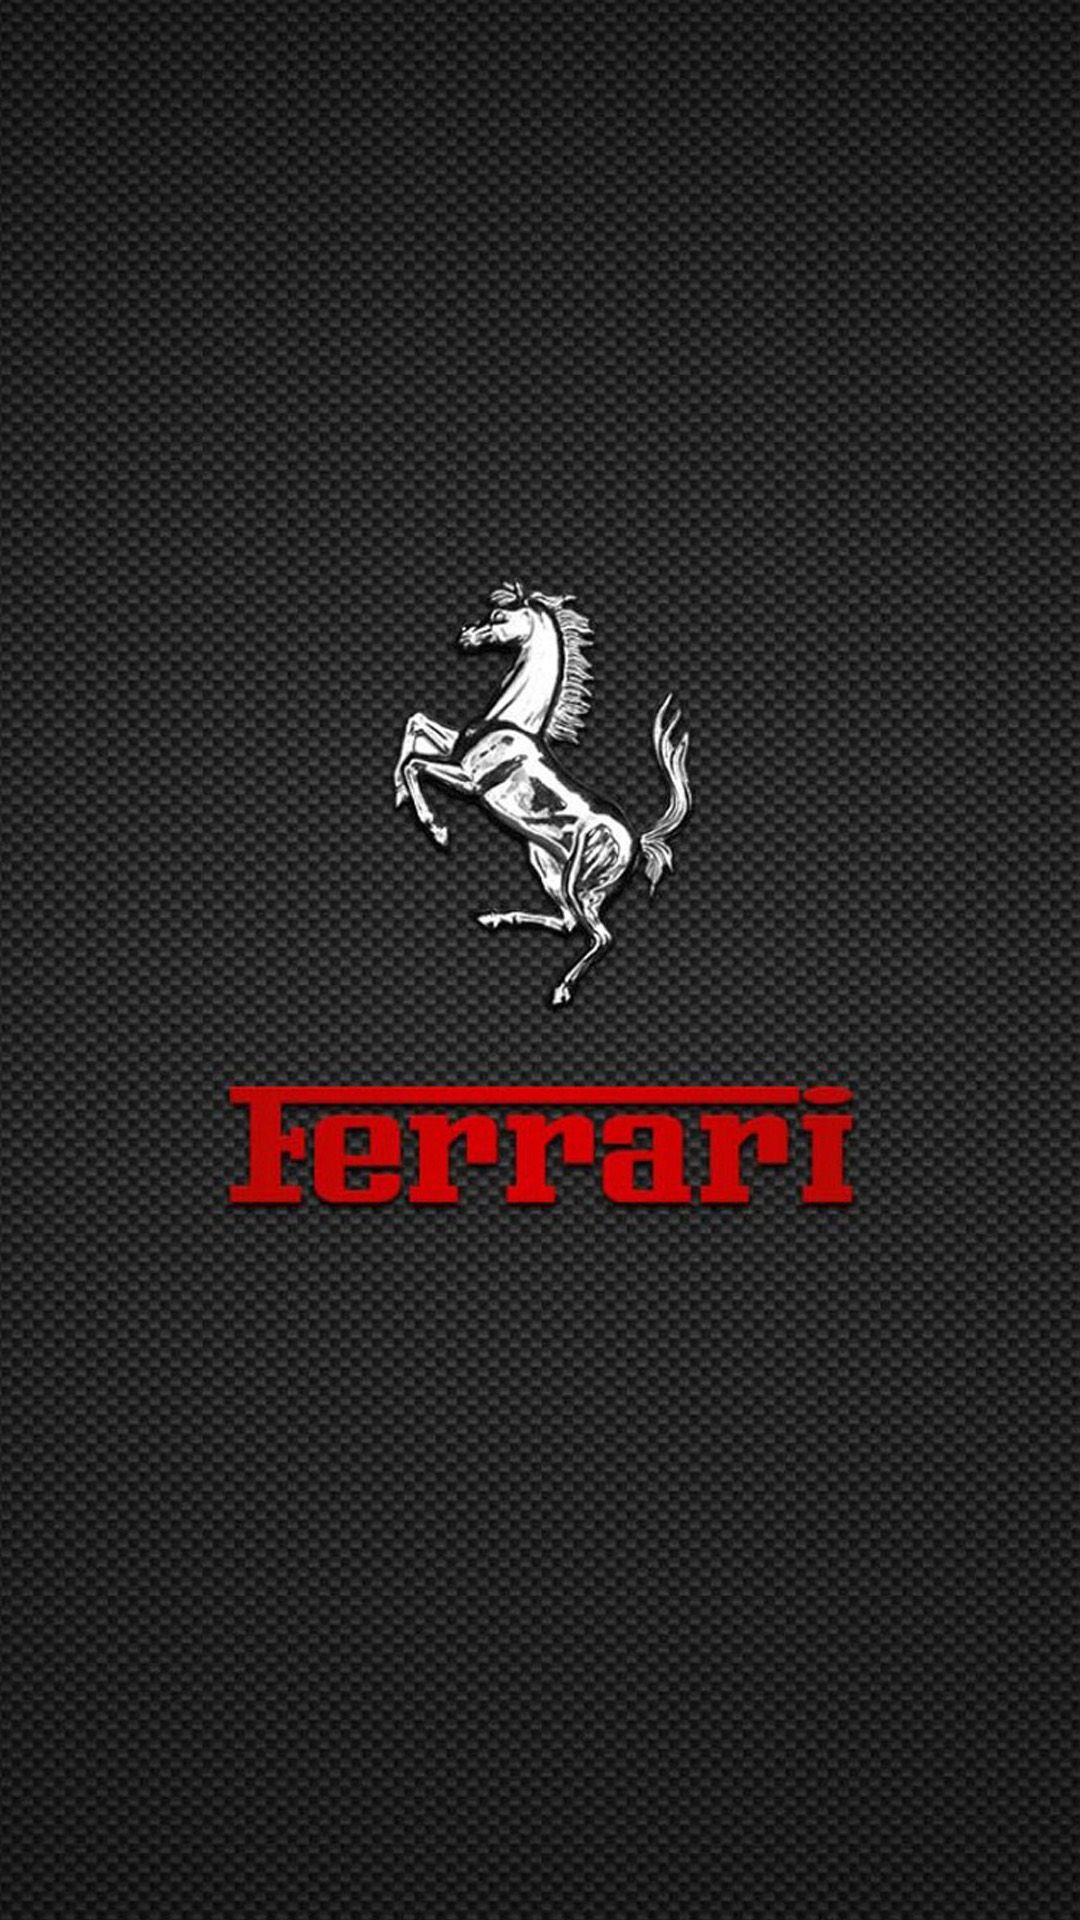 Image for Ferrari Logo Wallpaper Wallpaper For Mac qikvn